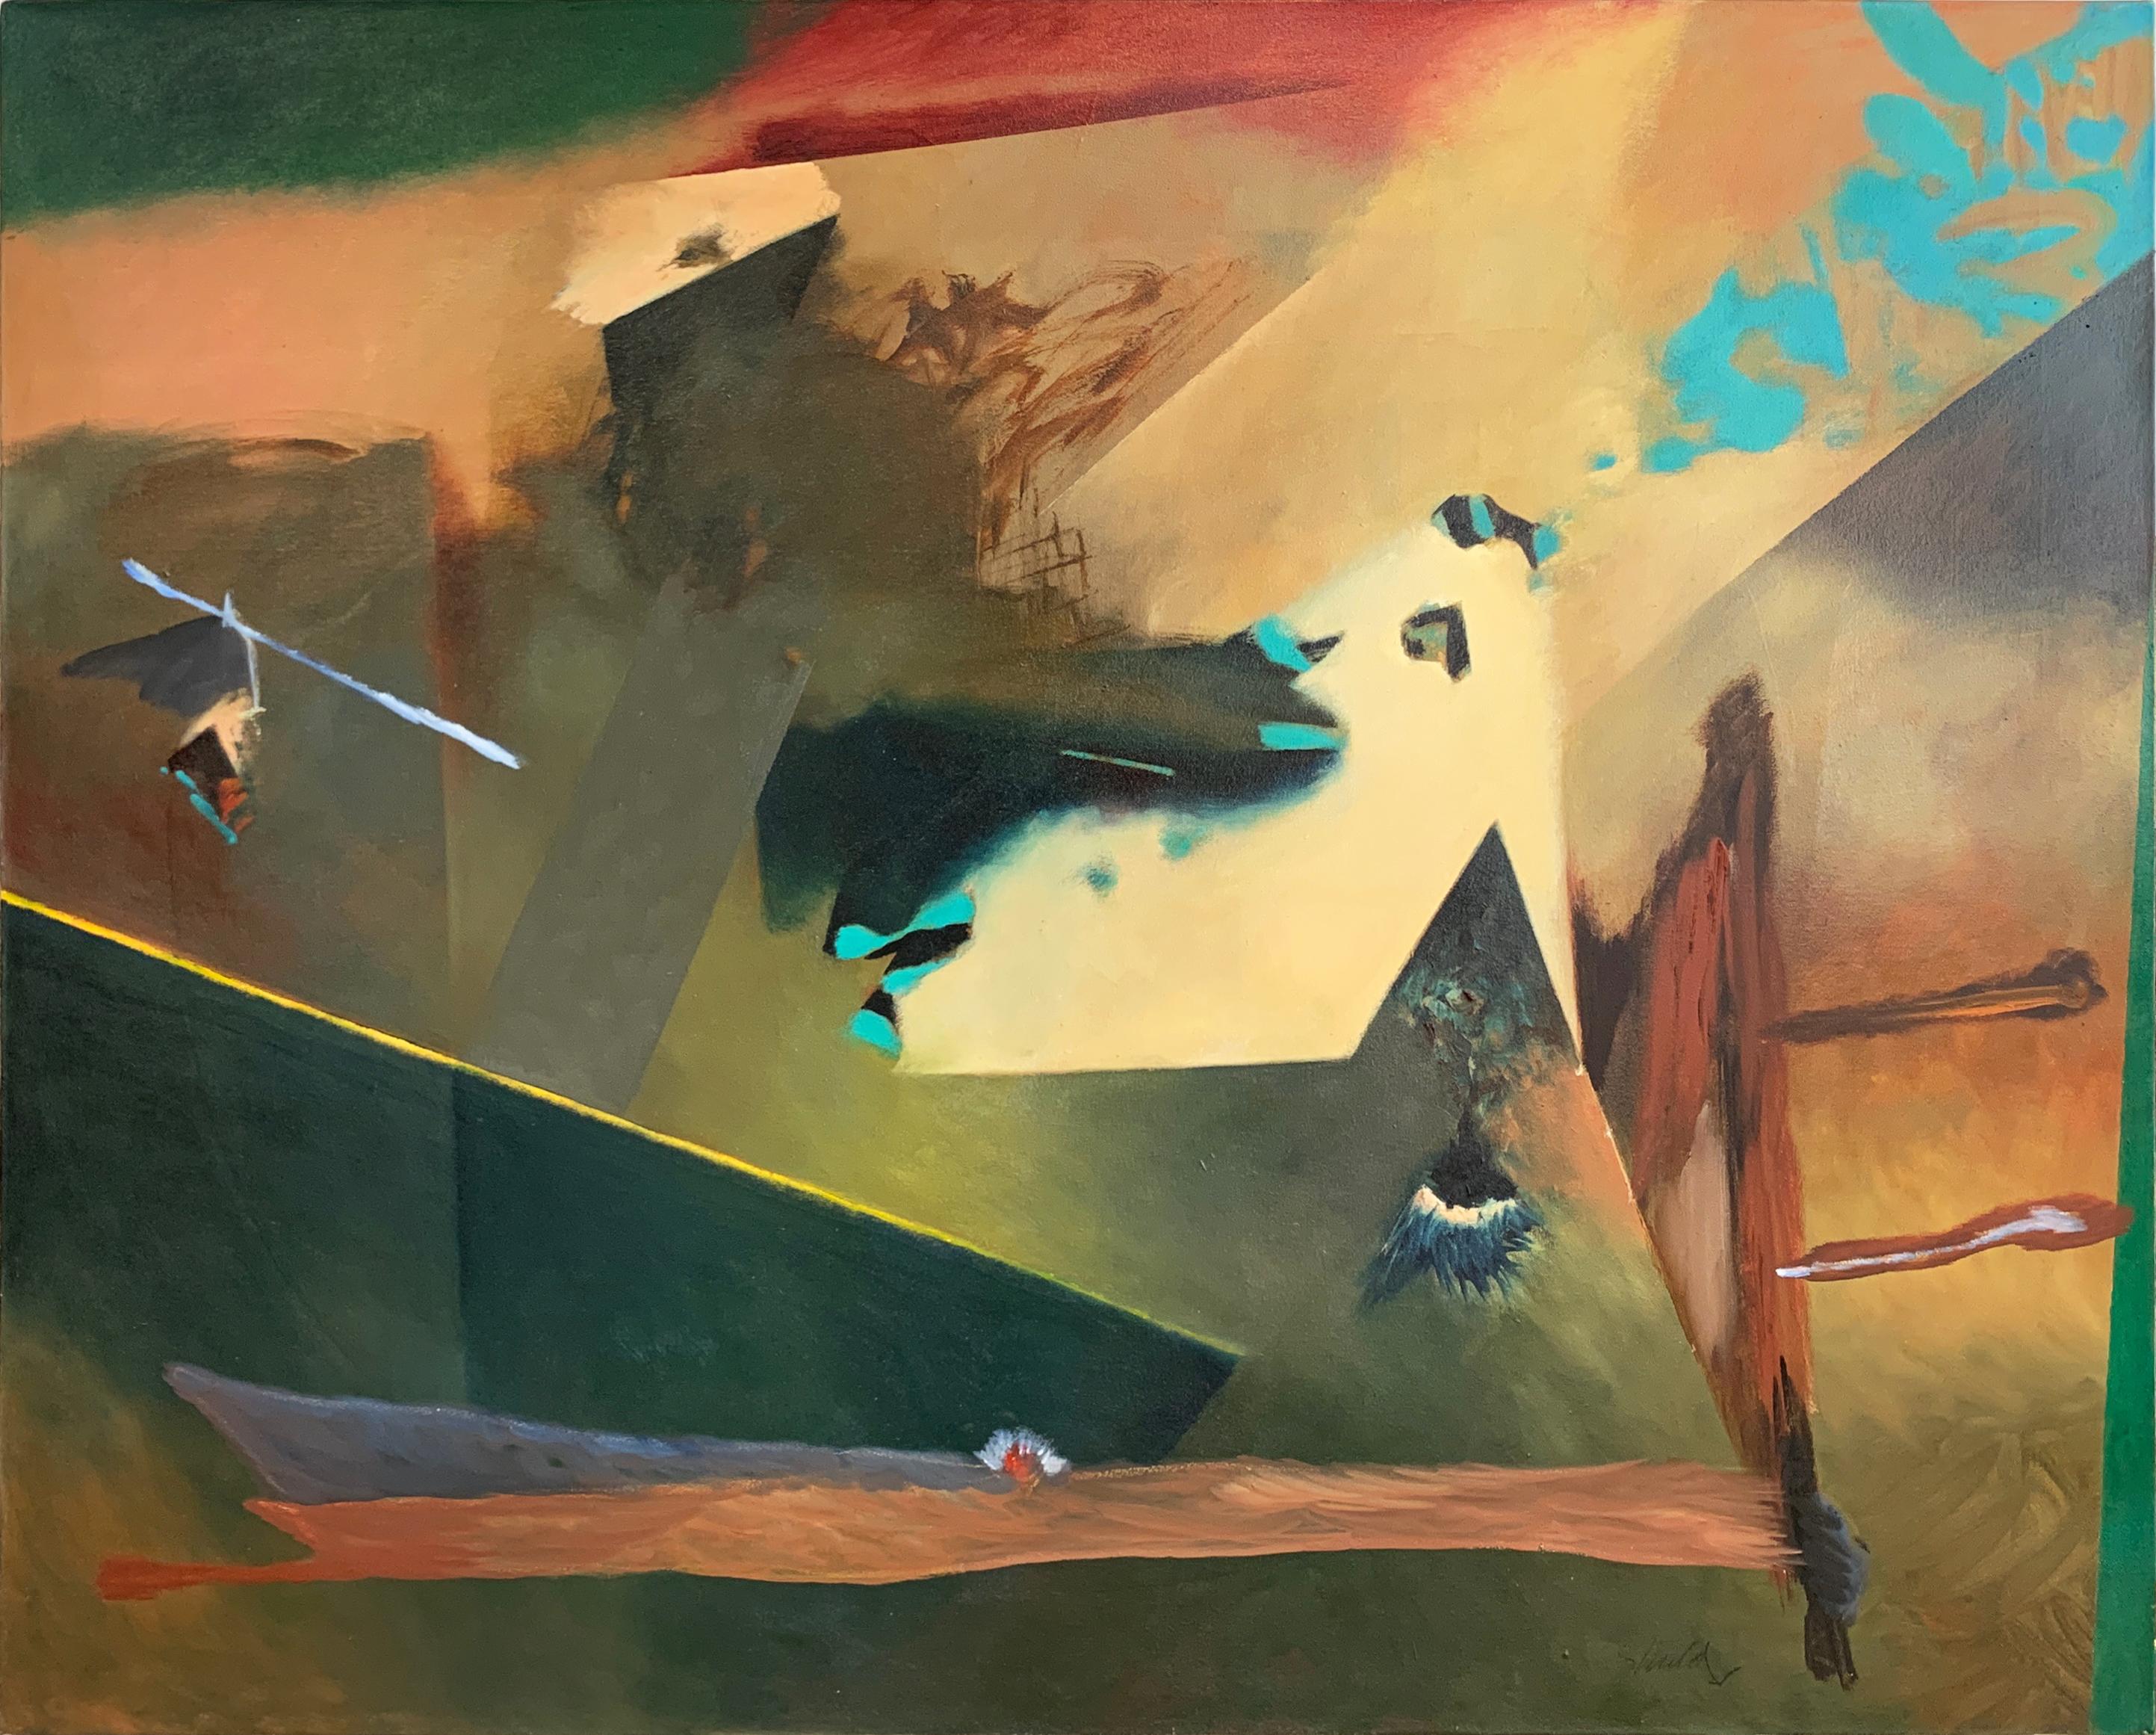 Abstract Painting William Shields  - Peinture à l'huile abstraite sans titre sur toile de l'illustrateur Bill Shields, 1990